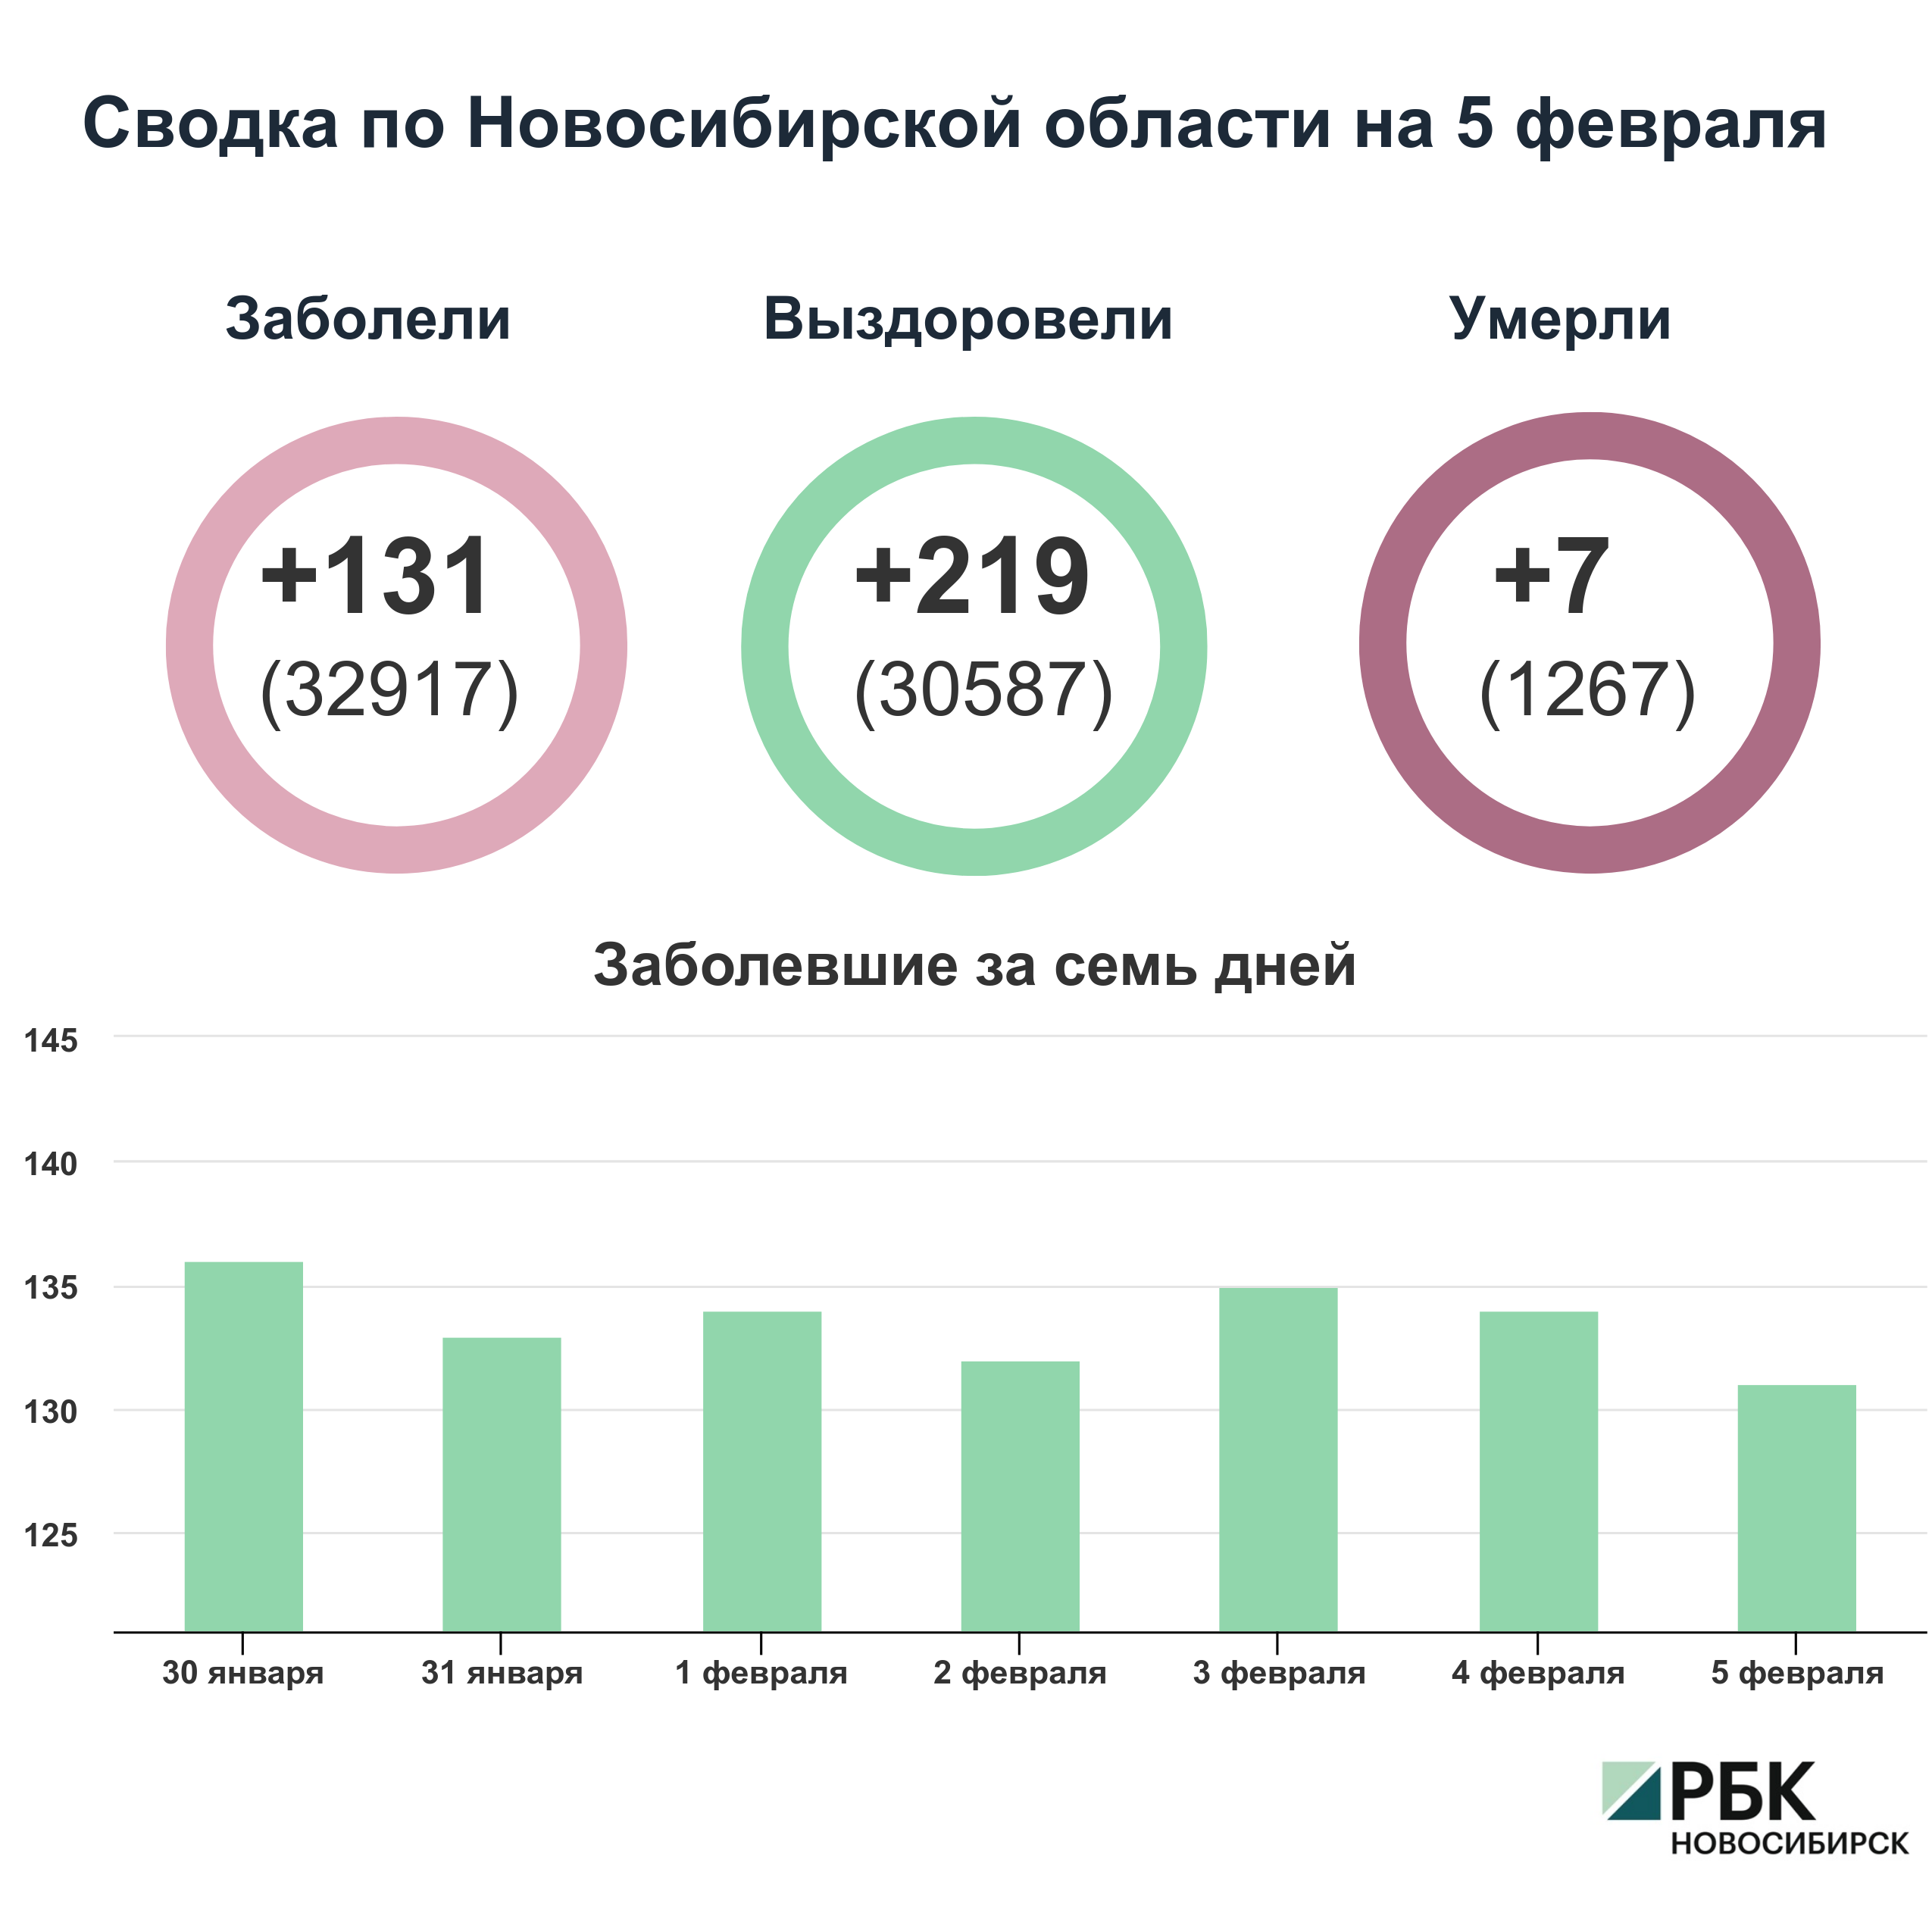 Коронавирус в Новосибирске: сводка на 5 февраля